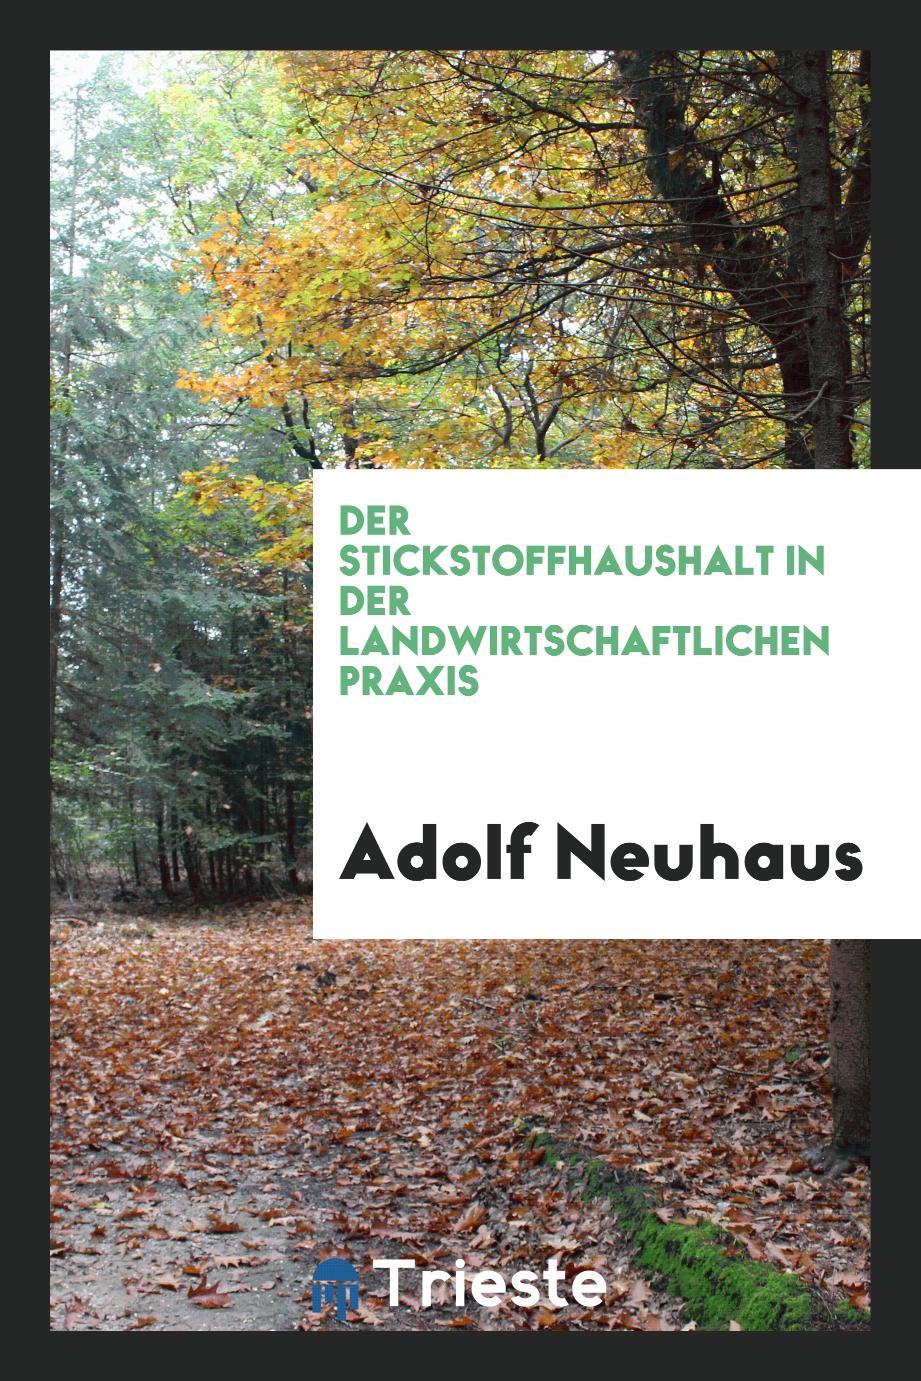 Adolf Neuhaus - Der Stickstoffhaushalt in der Landwirtschaftlichen Praxis